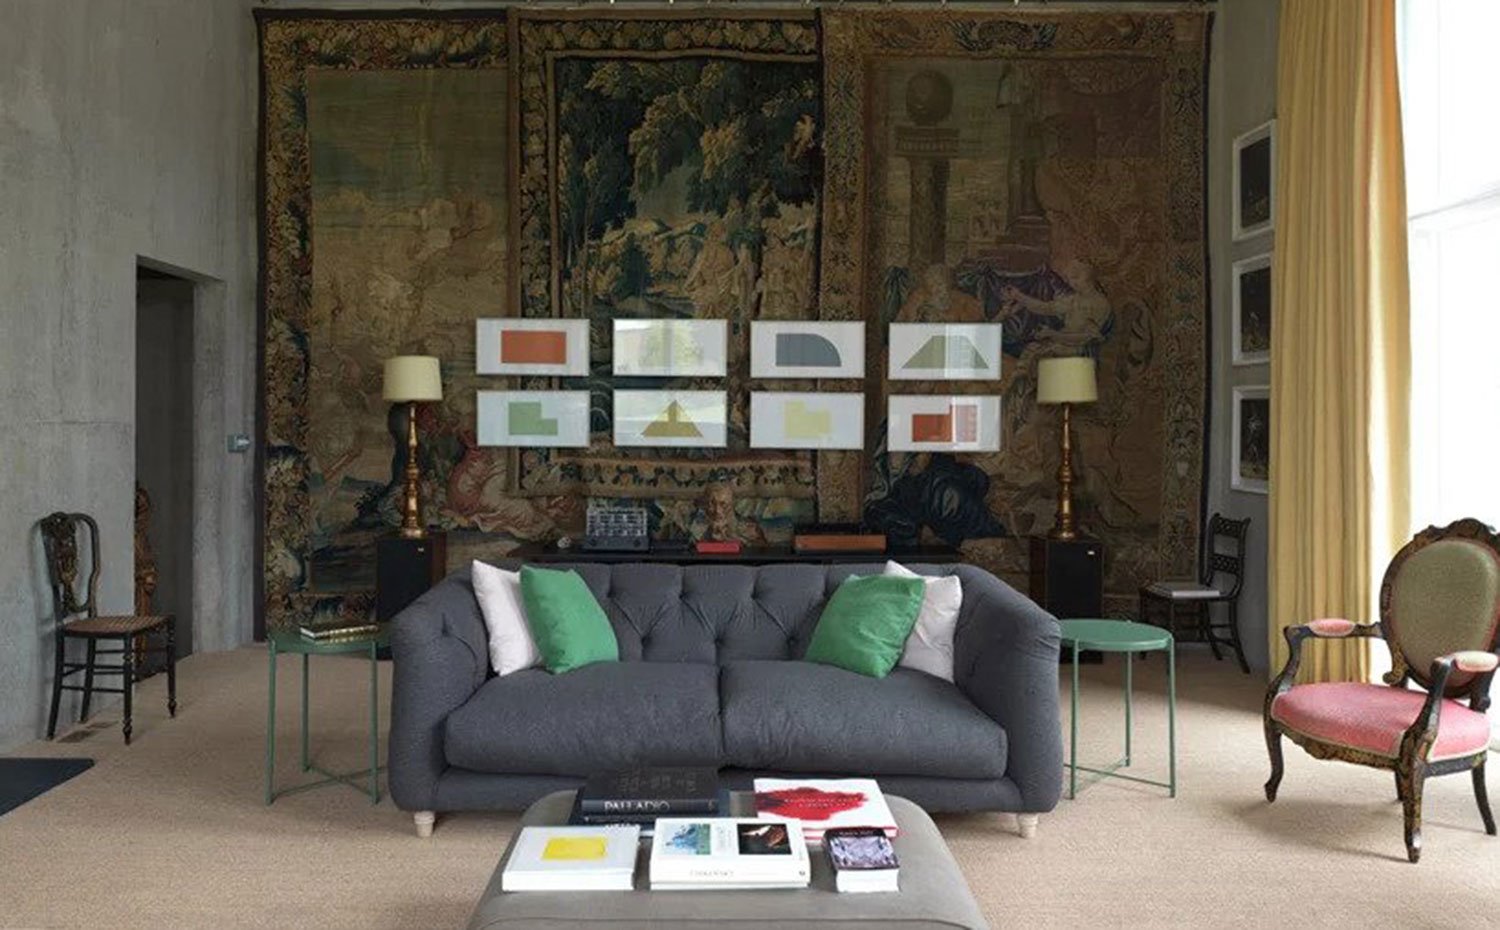 Sofá gris en centro de salón, mesillas auxiliares en verde, butacas y sillas clásicas, tapices en la pared superpuestos